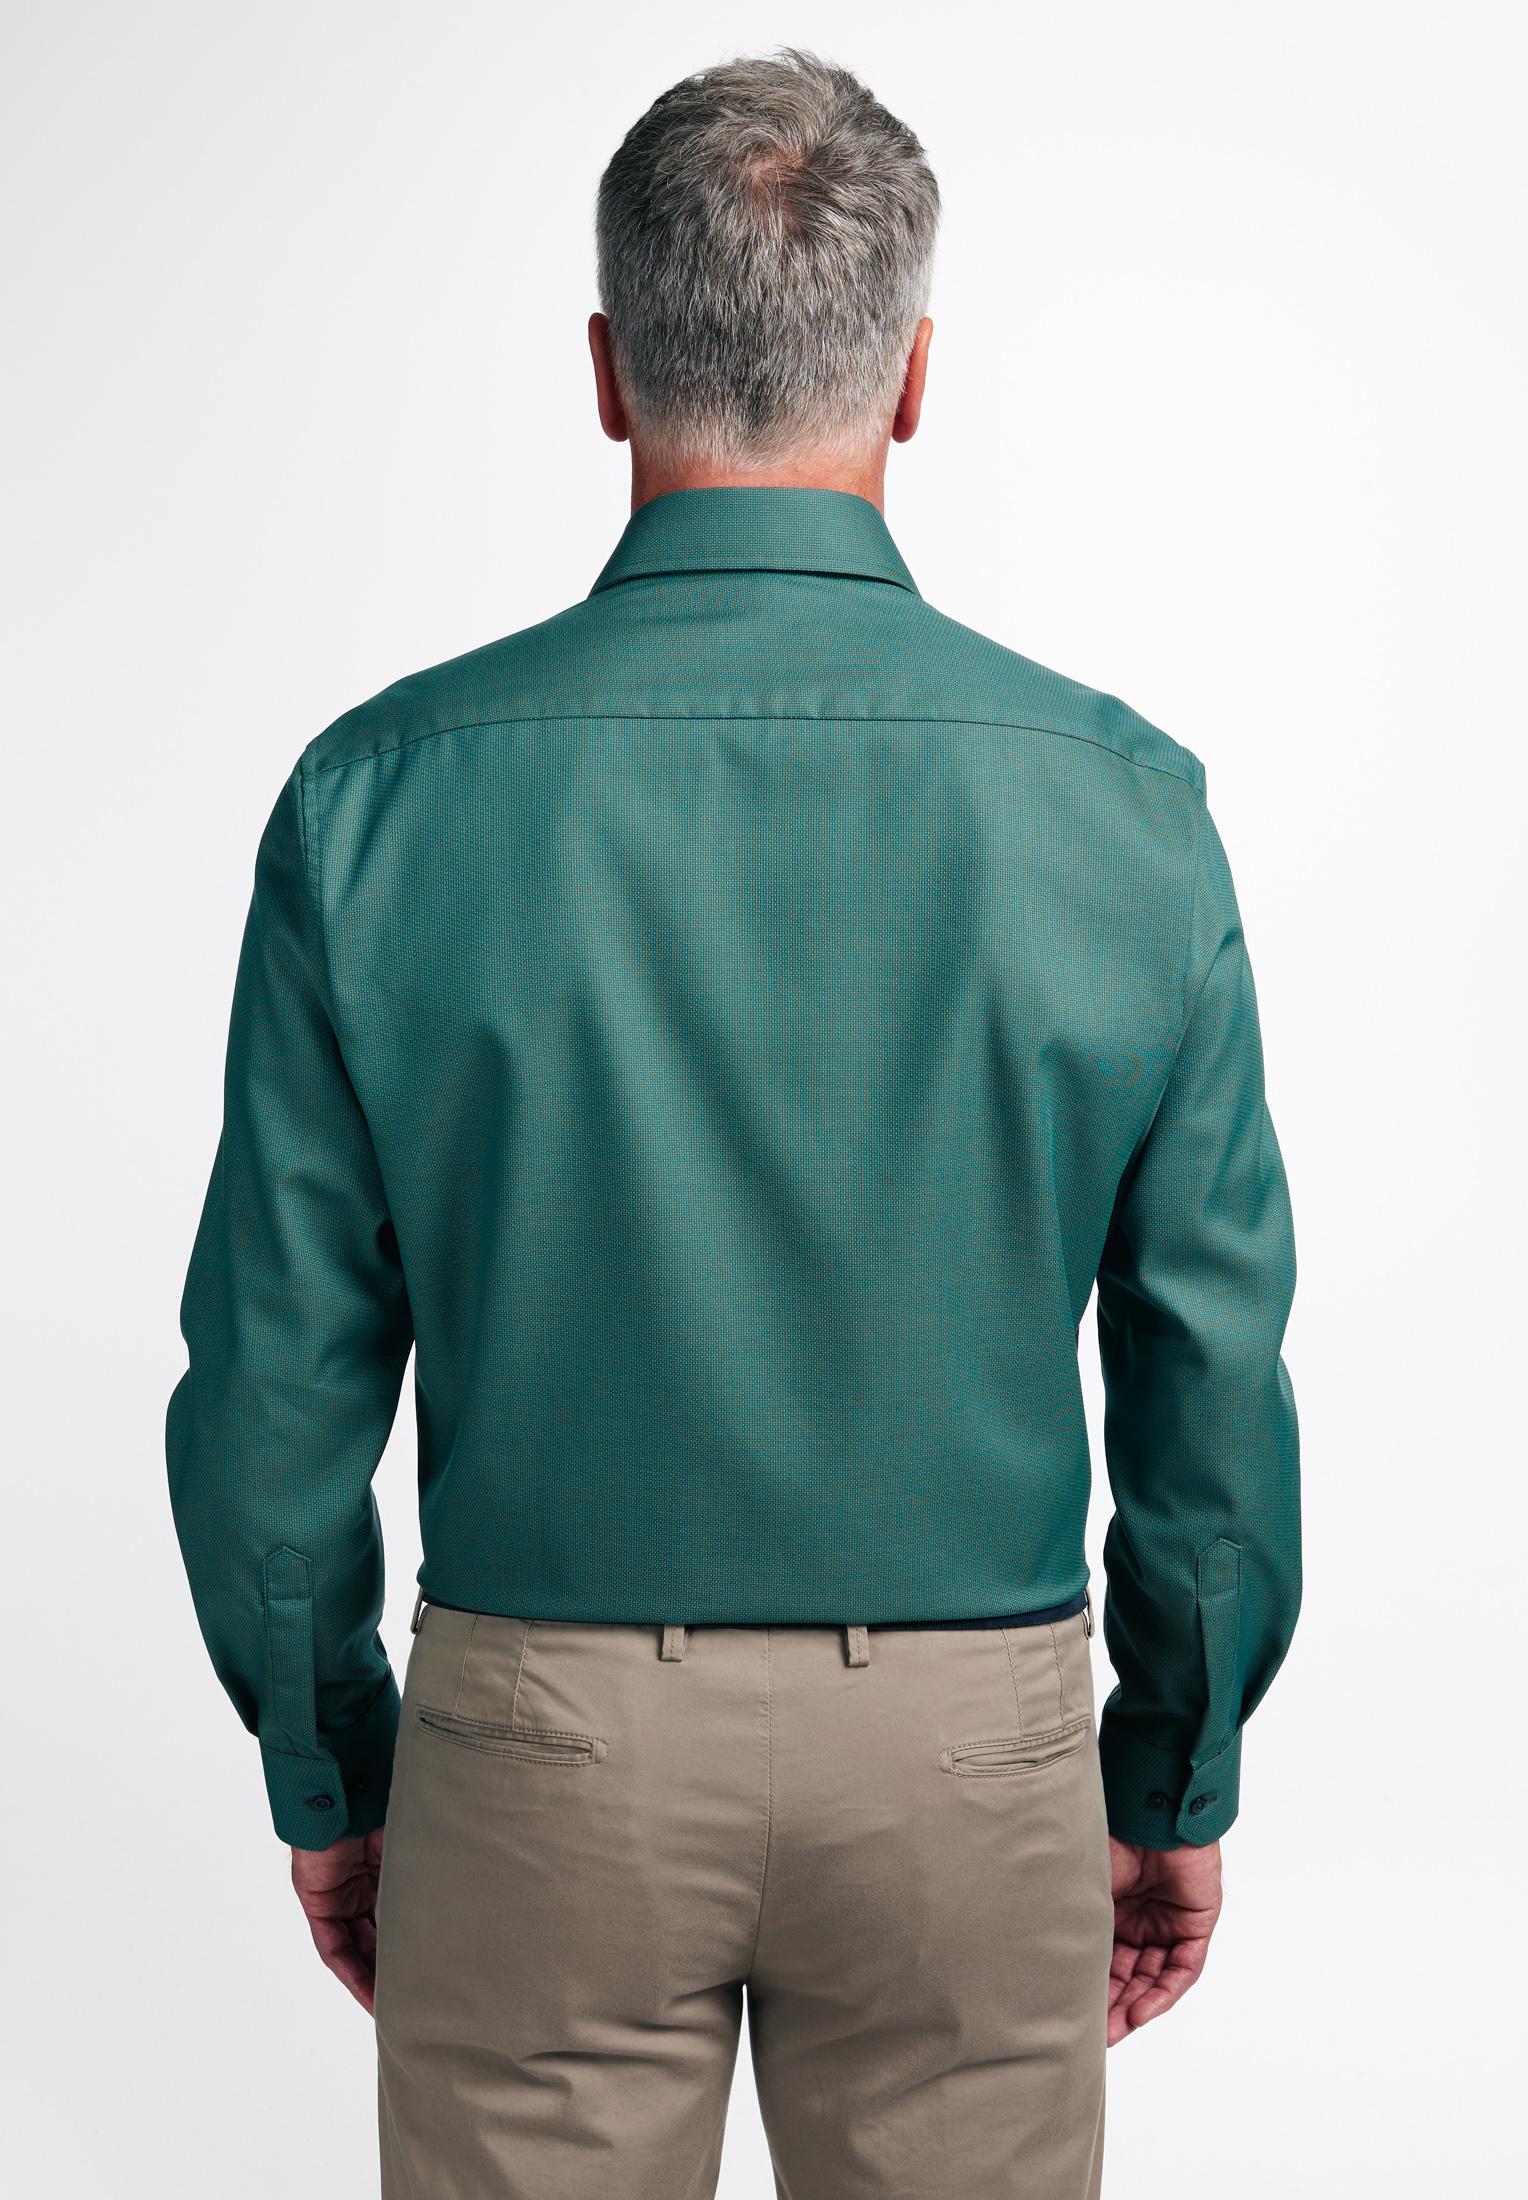 Мужская рубашка ETERNA, зеленая, цвет зеленый, размер 46 - фото 3